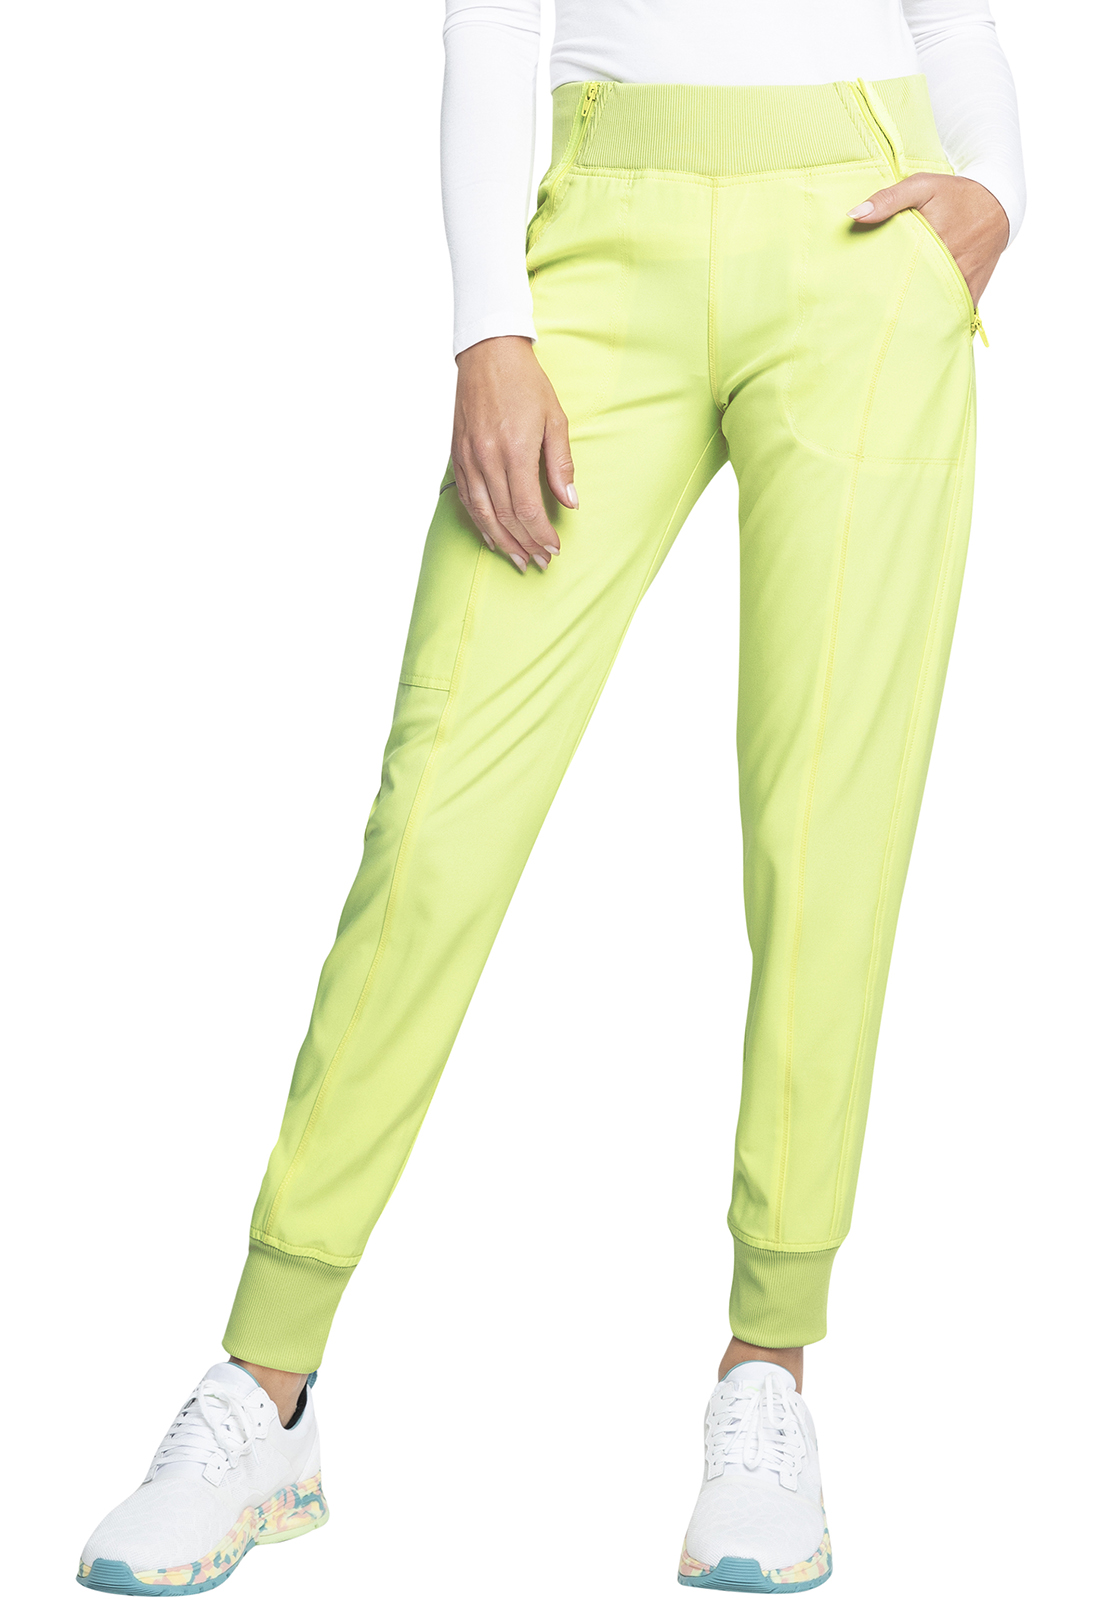 Pantalón deportivo para mujer verde neón Bolf CK-01 VERDE